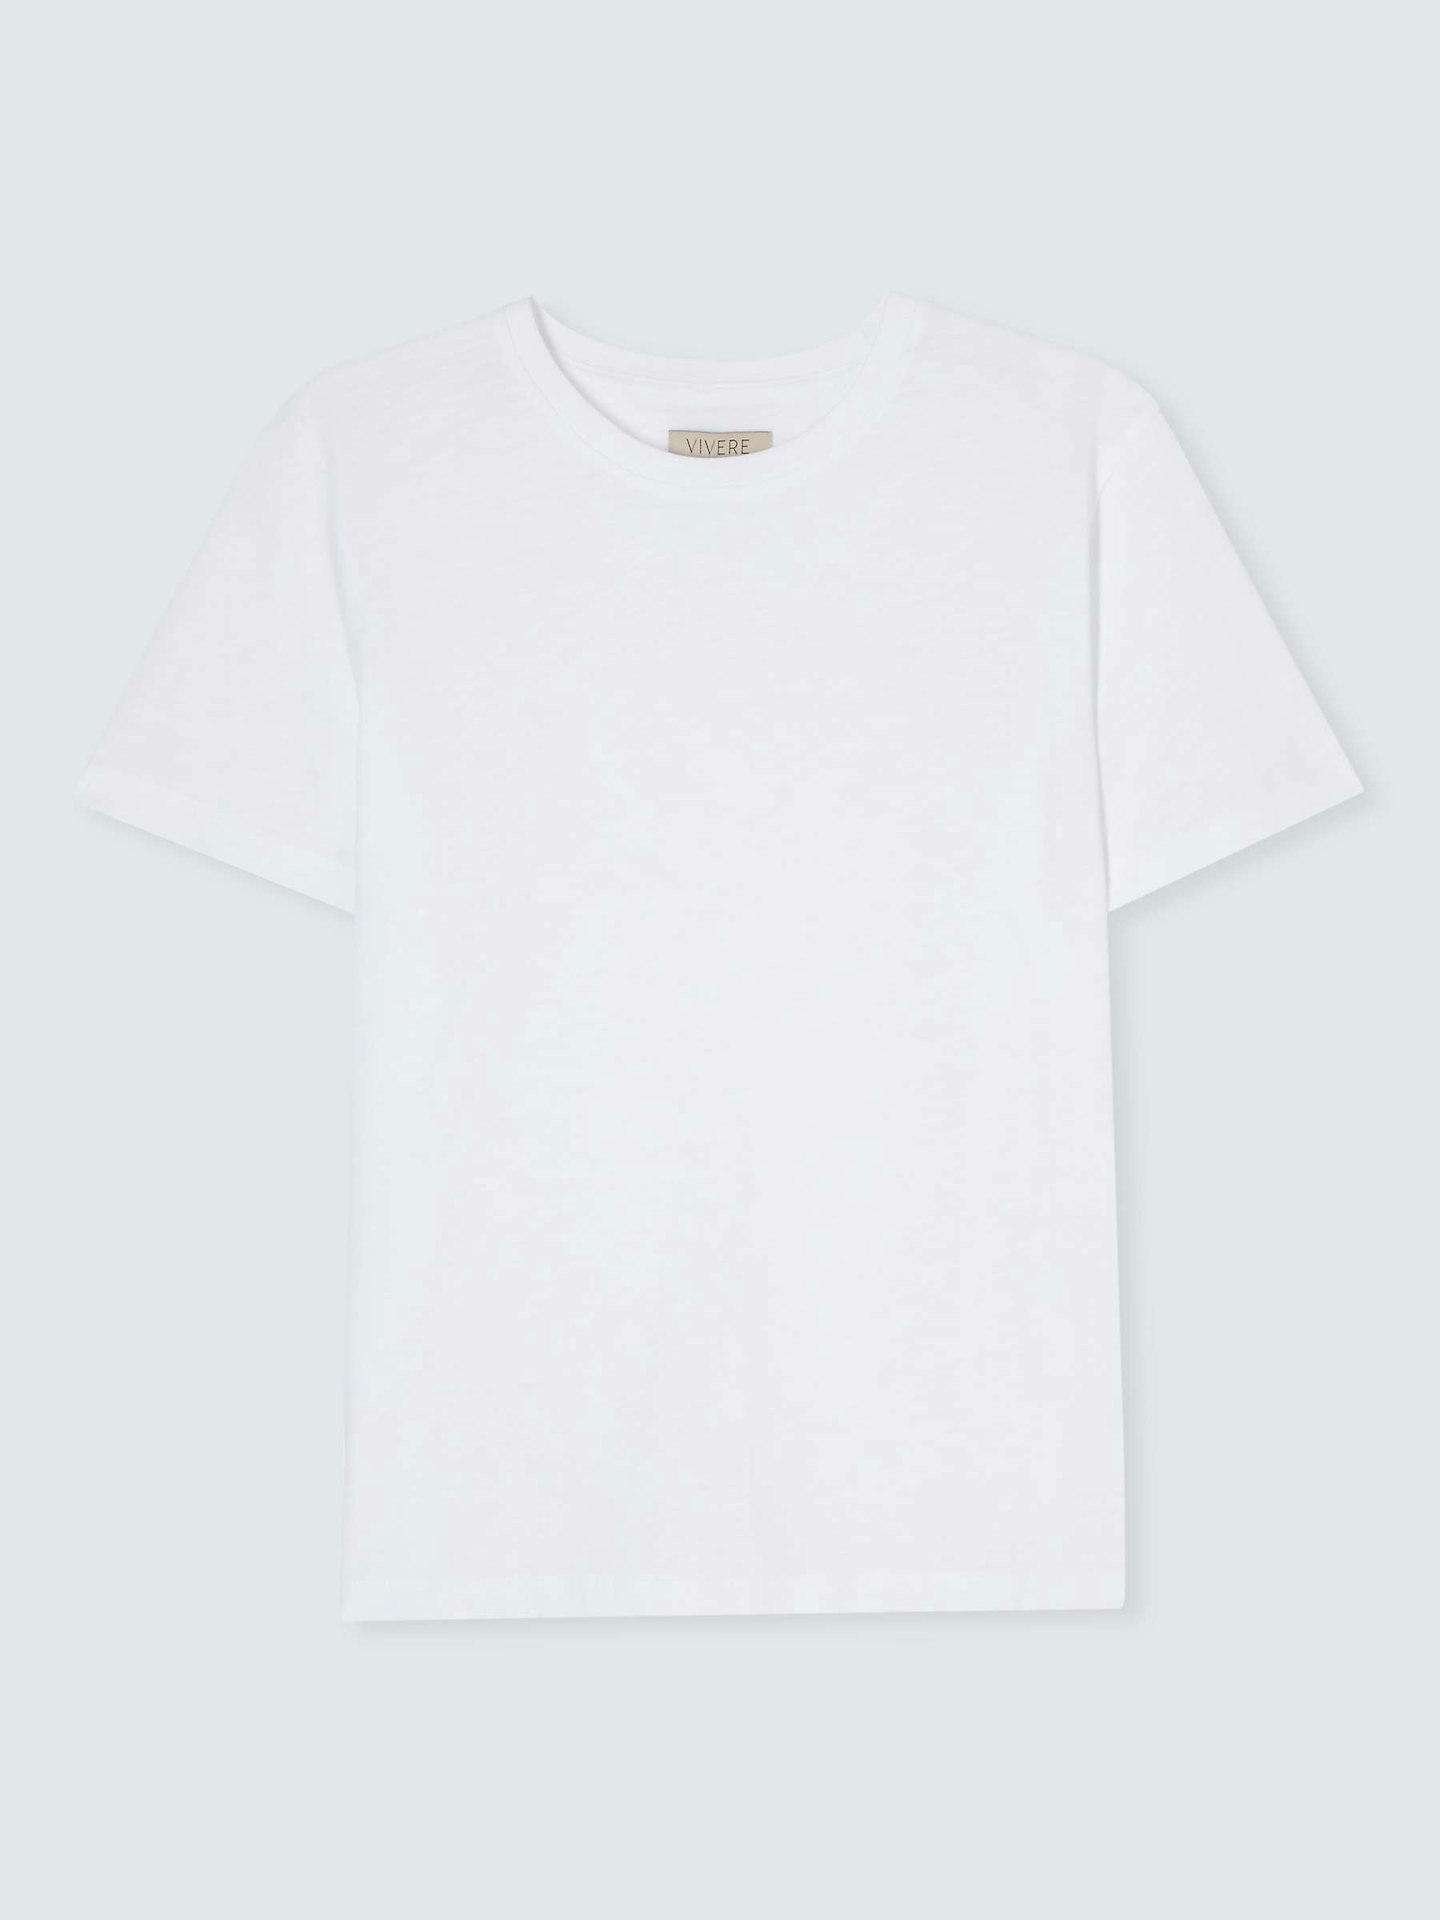 vivere white t-shirt 